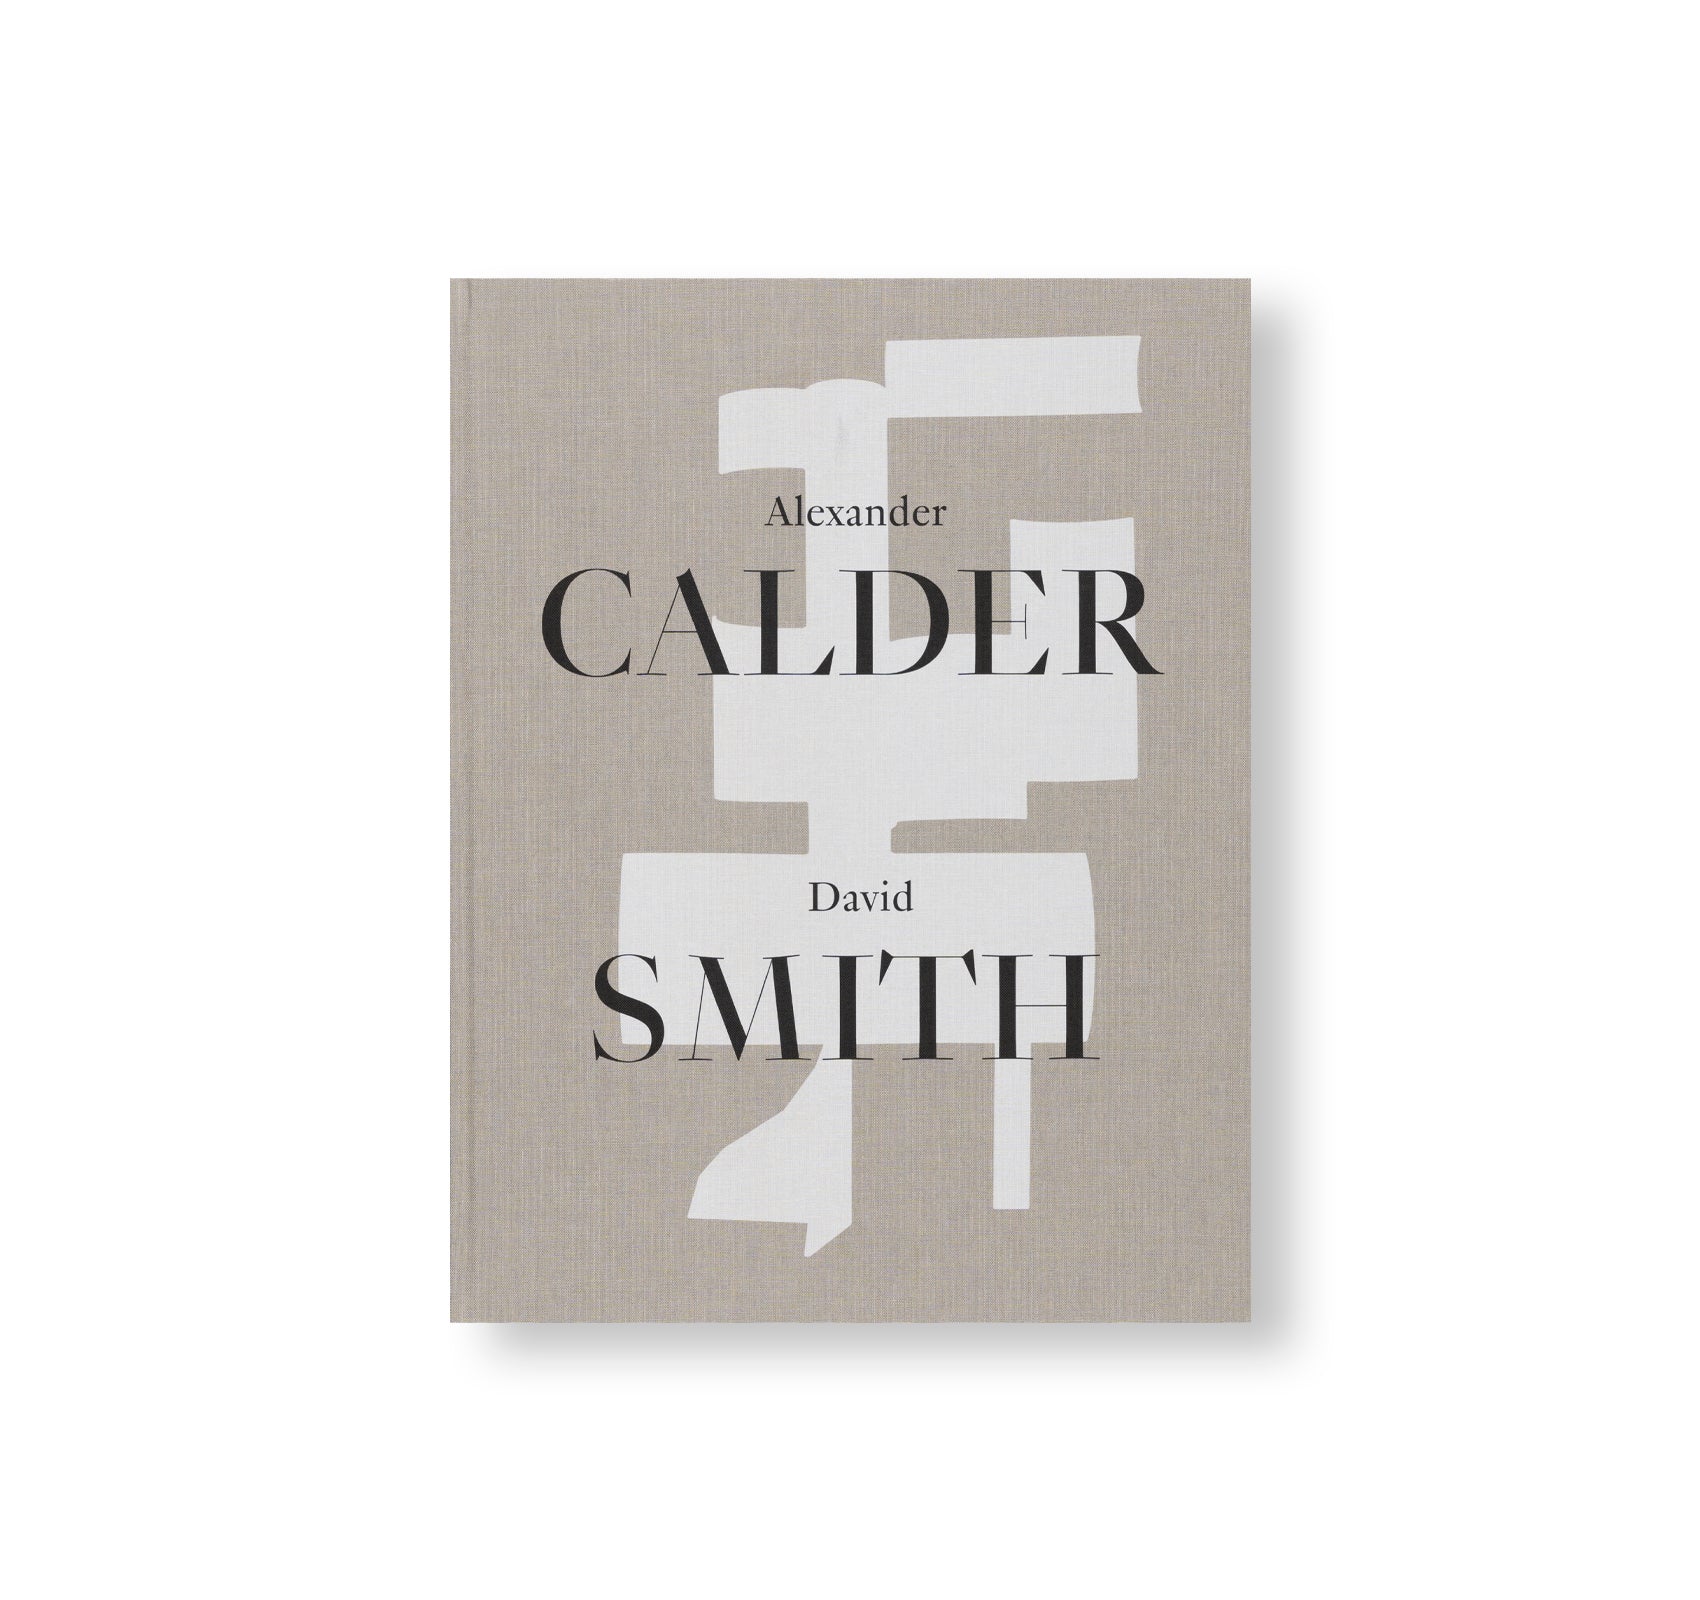 ALEXANDER CALDER / DAVID SMITH by Alexander Calder, David Smith